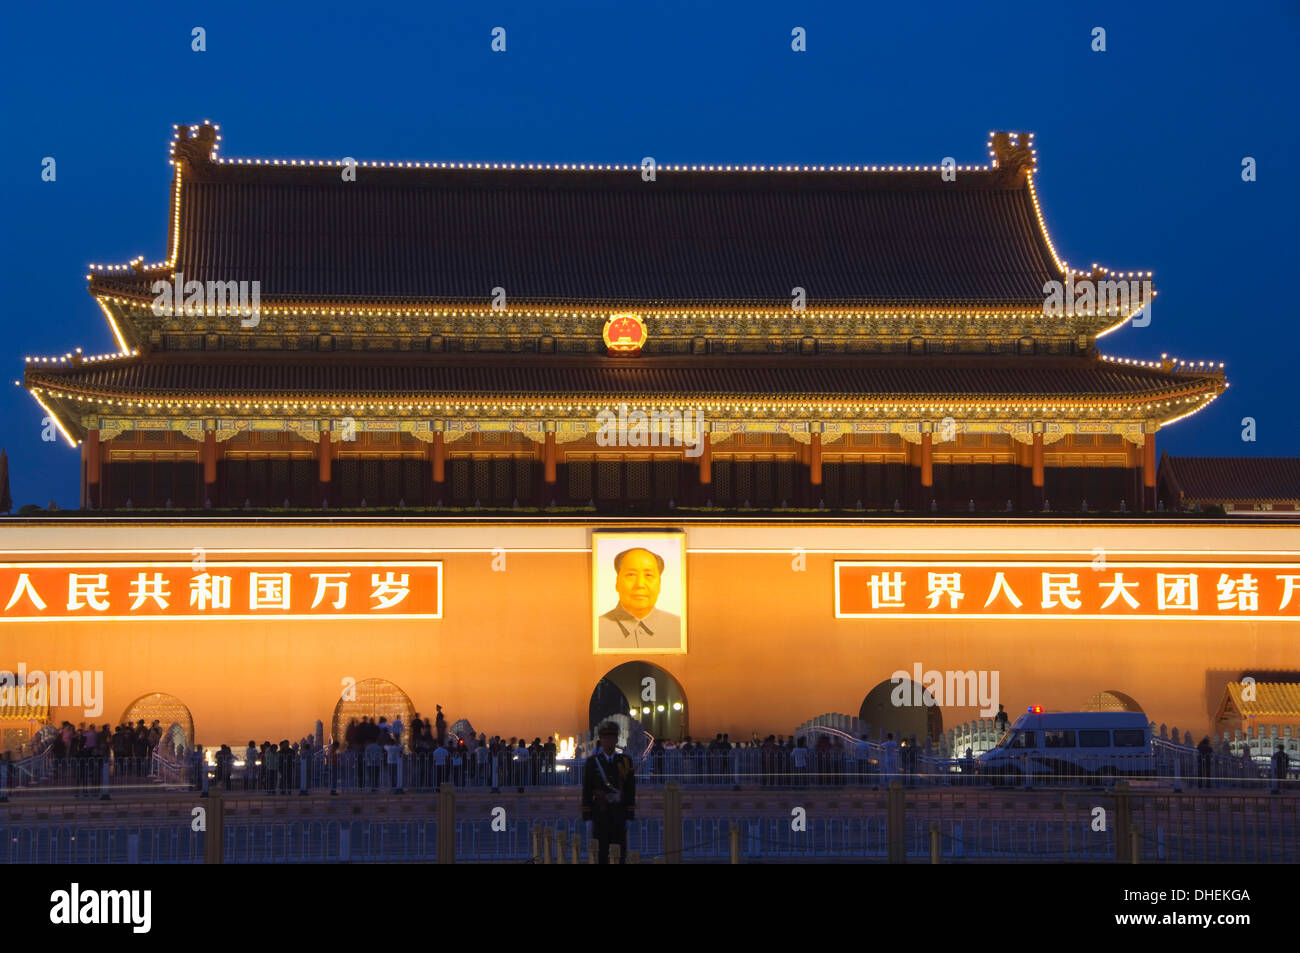 Puerta de la Paz Celestial y el retrato de Mao Zhe Dong, la plaza de Tiananmen, Pekín, China, Asia Foto de stock